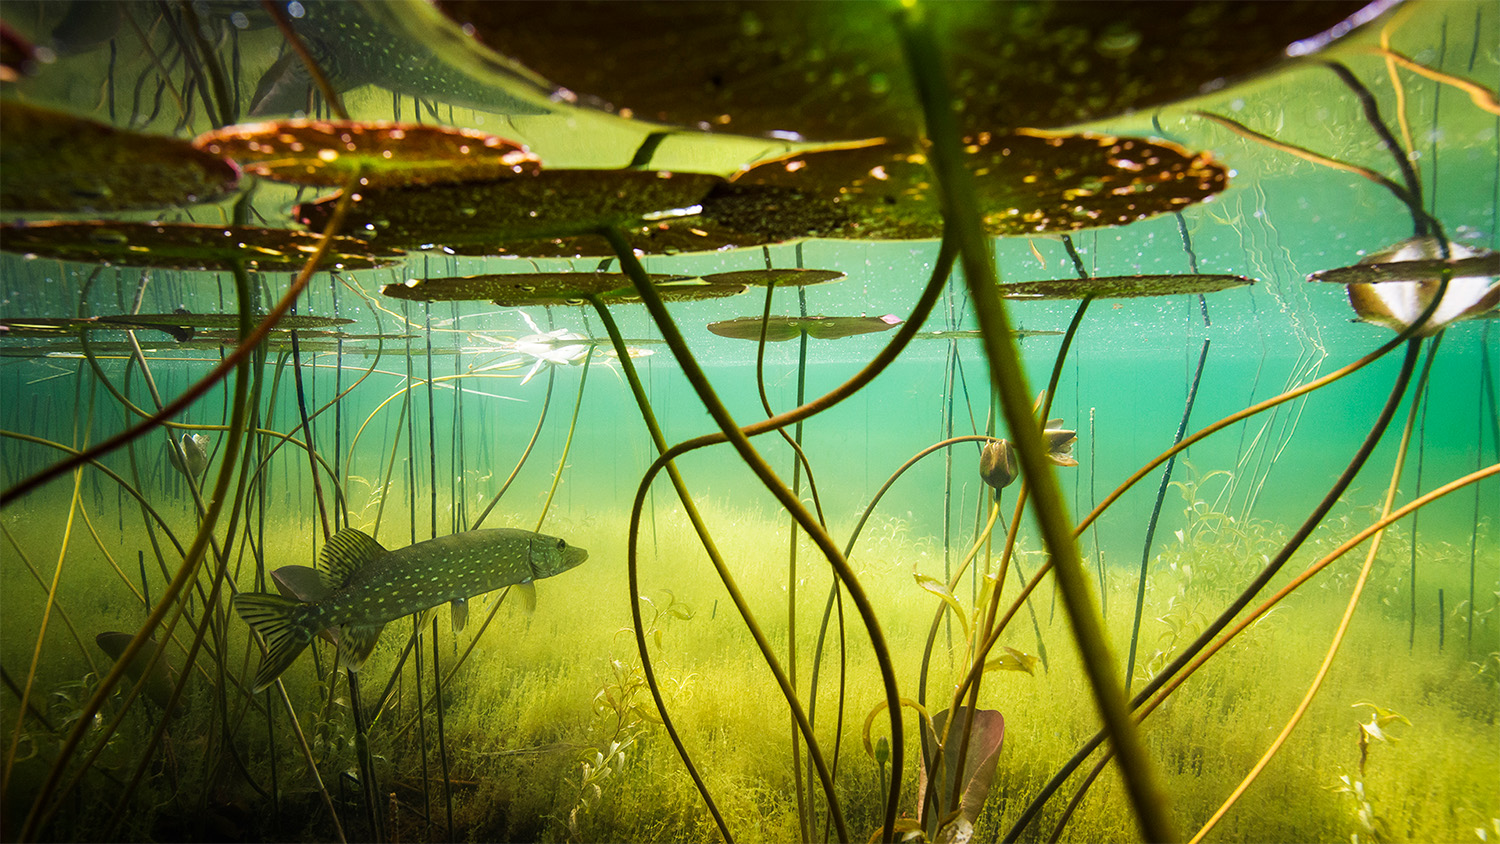 En gädda simmar omkring i vattnet under några näckrosblad.